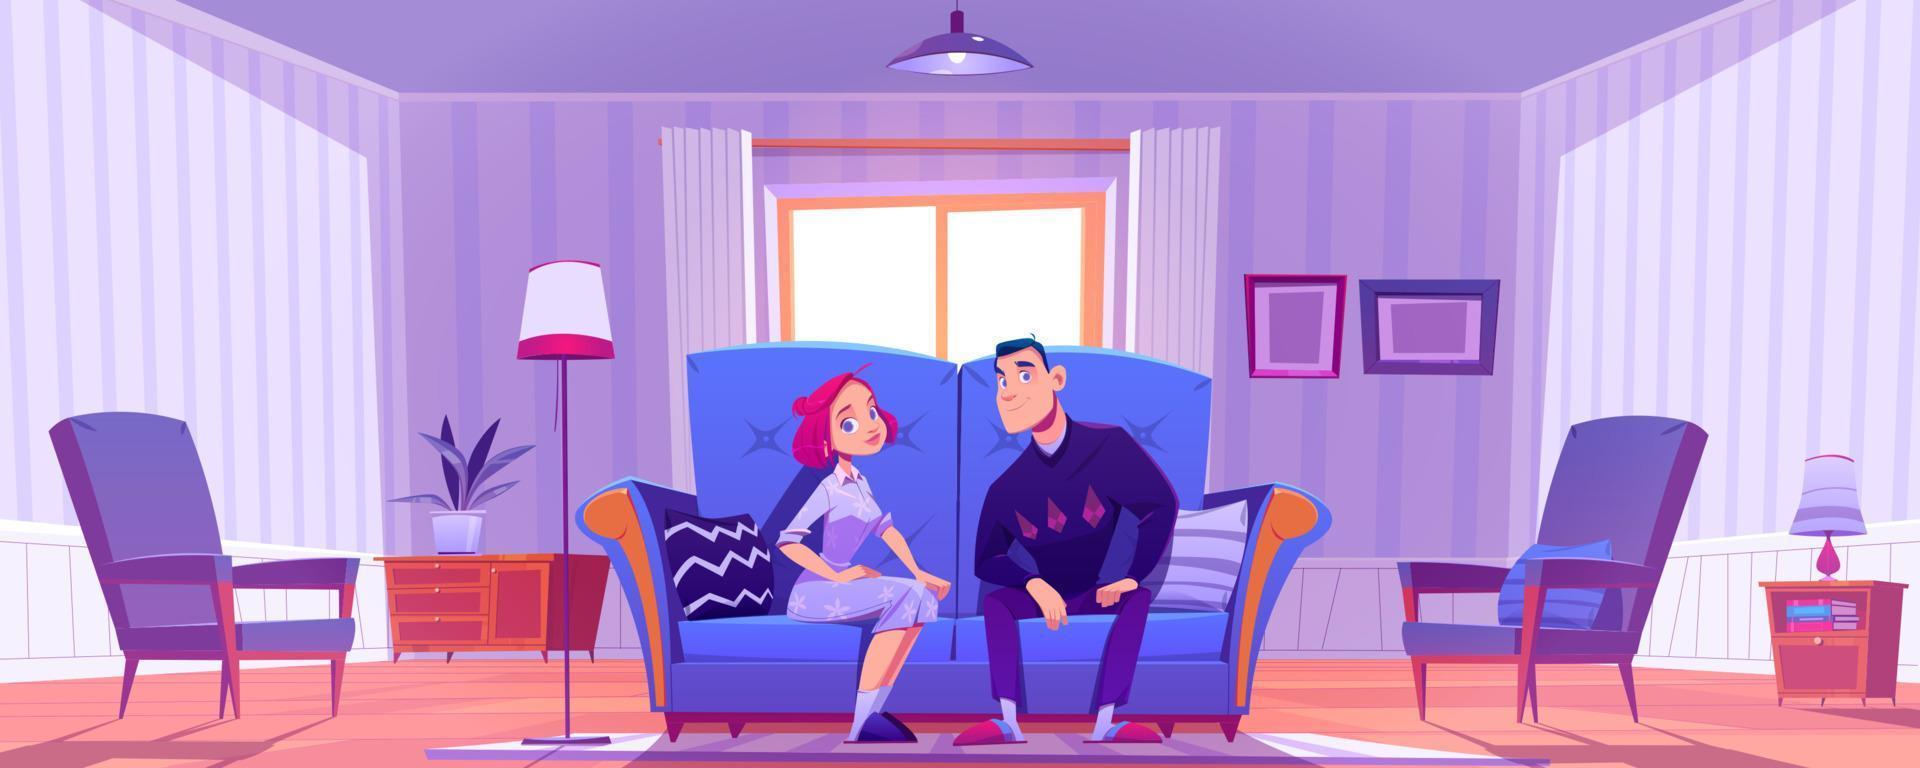 pareja feliz, hombre joven y mujer sentados en el sofá vector